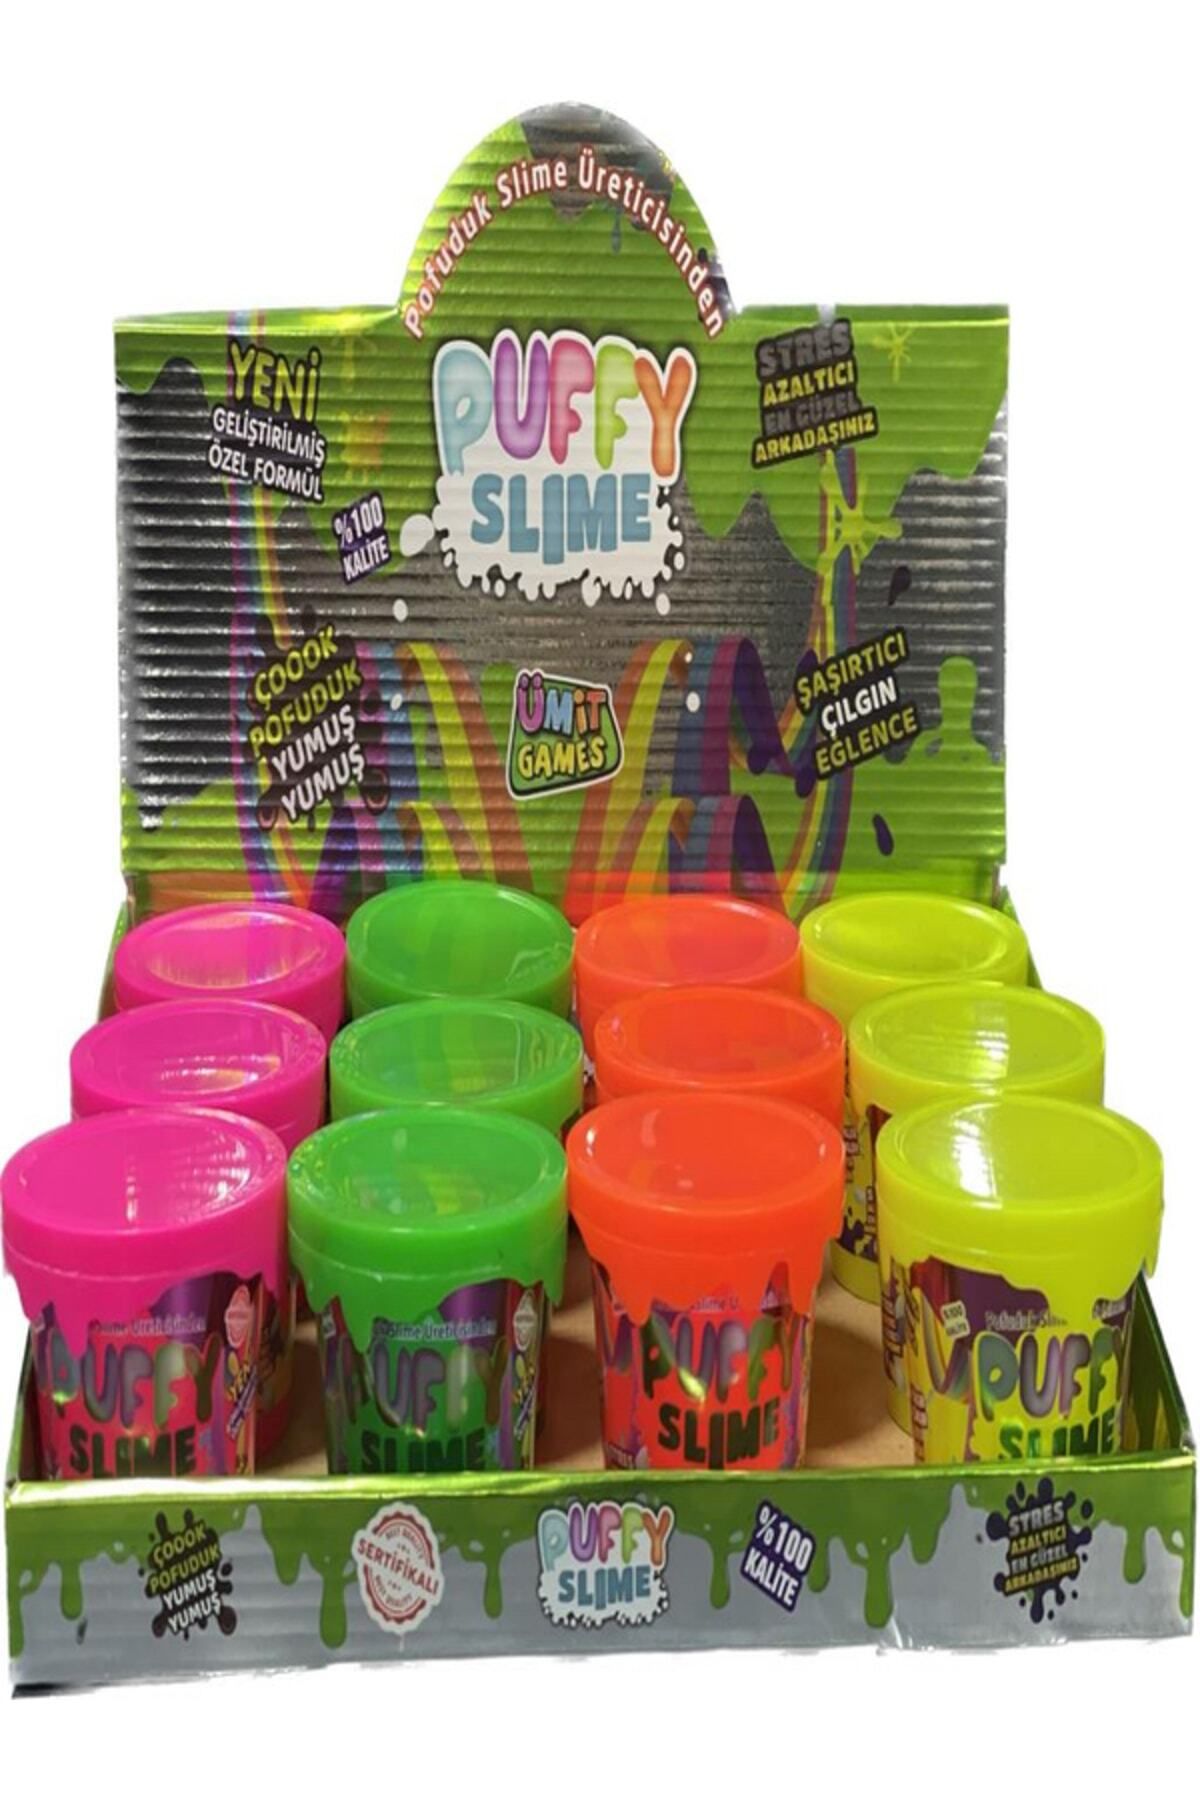 ümit toys Puffy Slime Yeni Trend Slime 3 Adet Hazır Slime 4 Farklı Renkler 120 gr Slaym Pop Tube